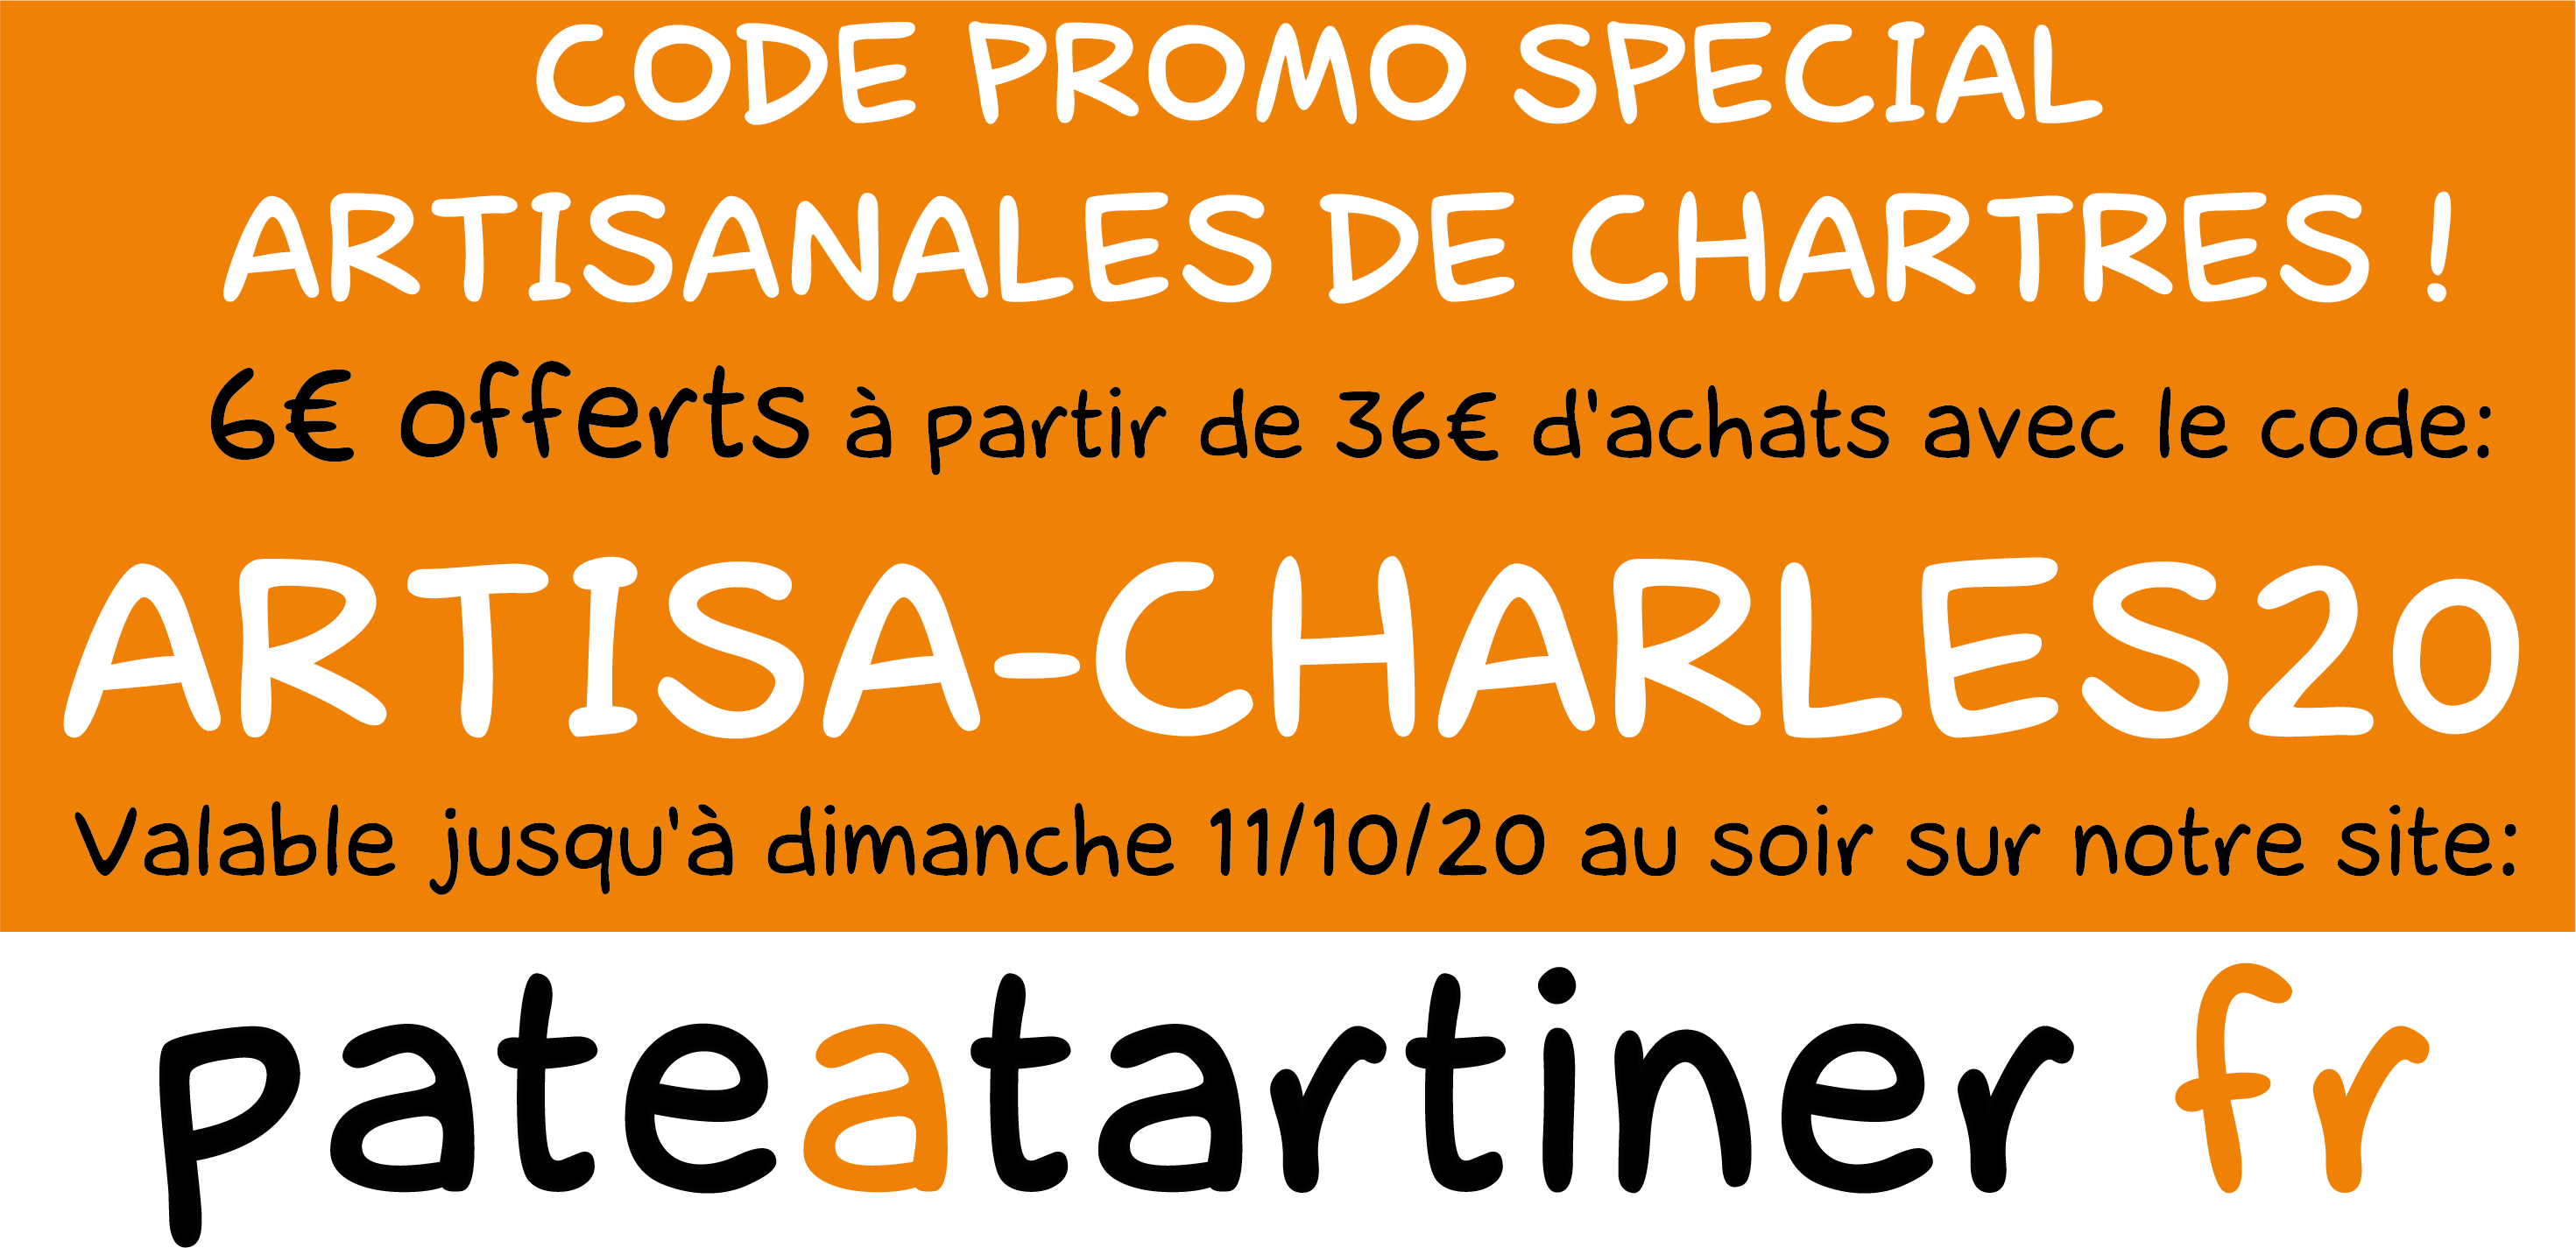 Code promo pour les Artisanales de Chartres, 6€ de réduction sur notre site pateatartiner.fr